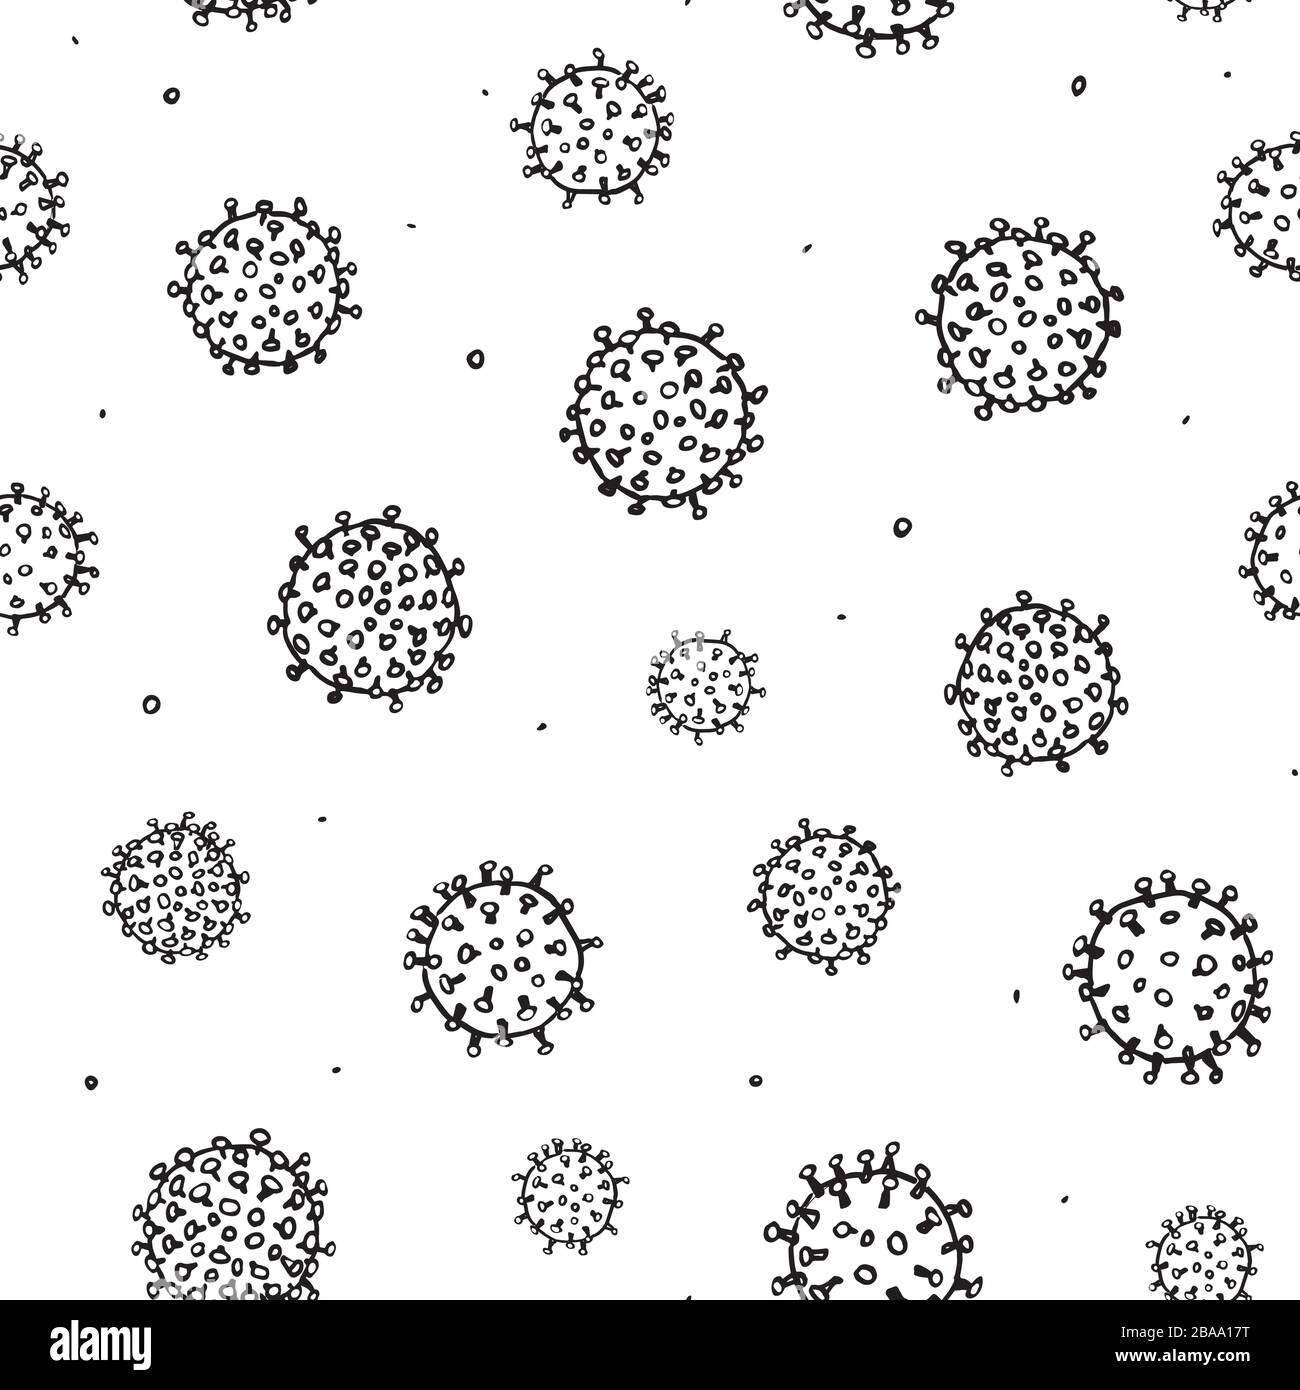 Vektorabstraktes, handgezeichnetes Corona-Virusmuster mit unregelmäßigem Keim der Strichkunst. Grafik, modernes Design, Gesundheitswesen, Infografik, Verpackung. Stock Vektor